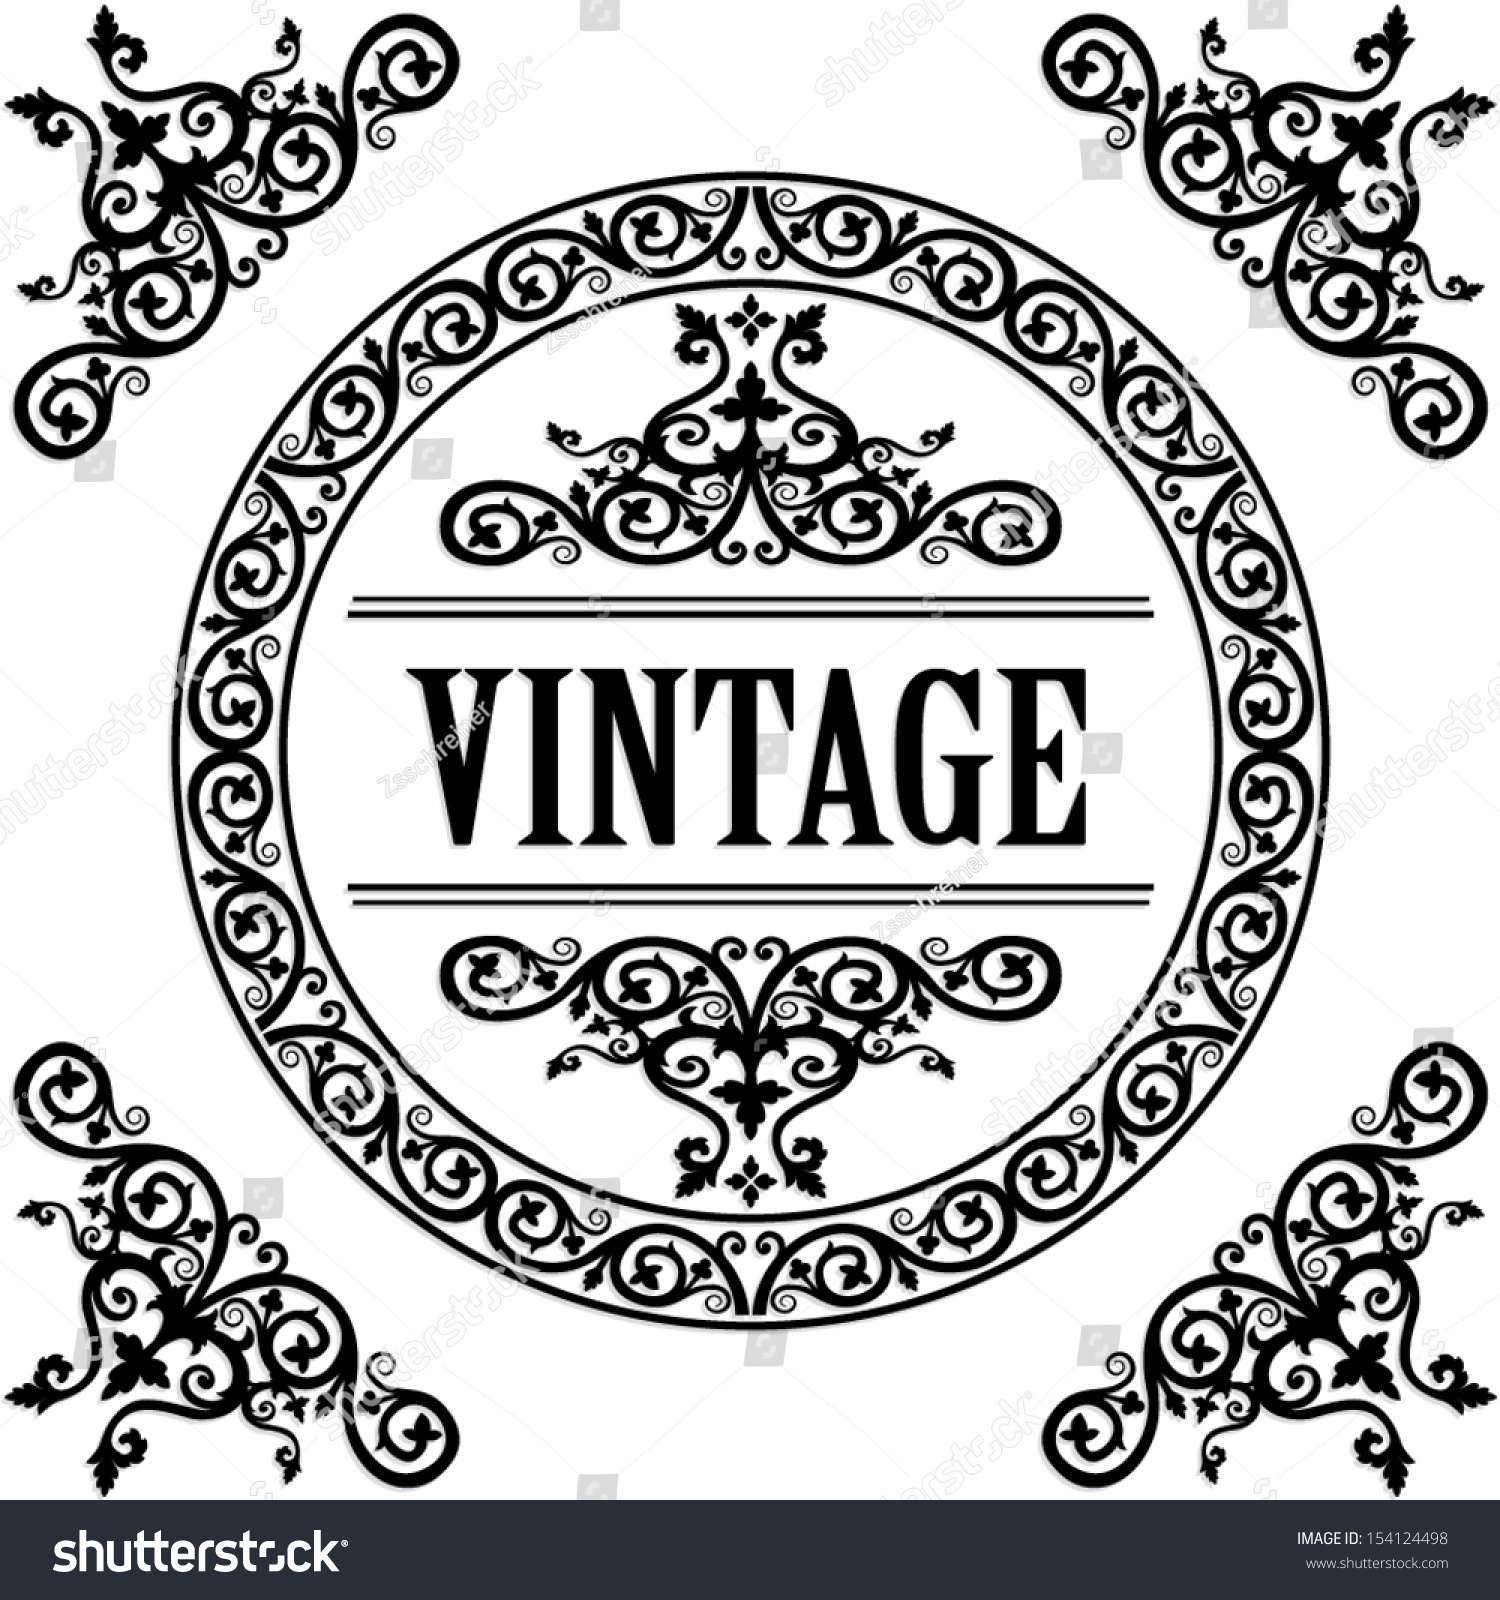 Download Ornamental Circle Frame Vintage Vector Illustration Stock ...